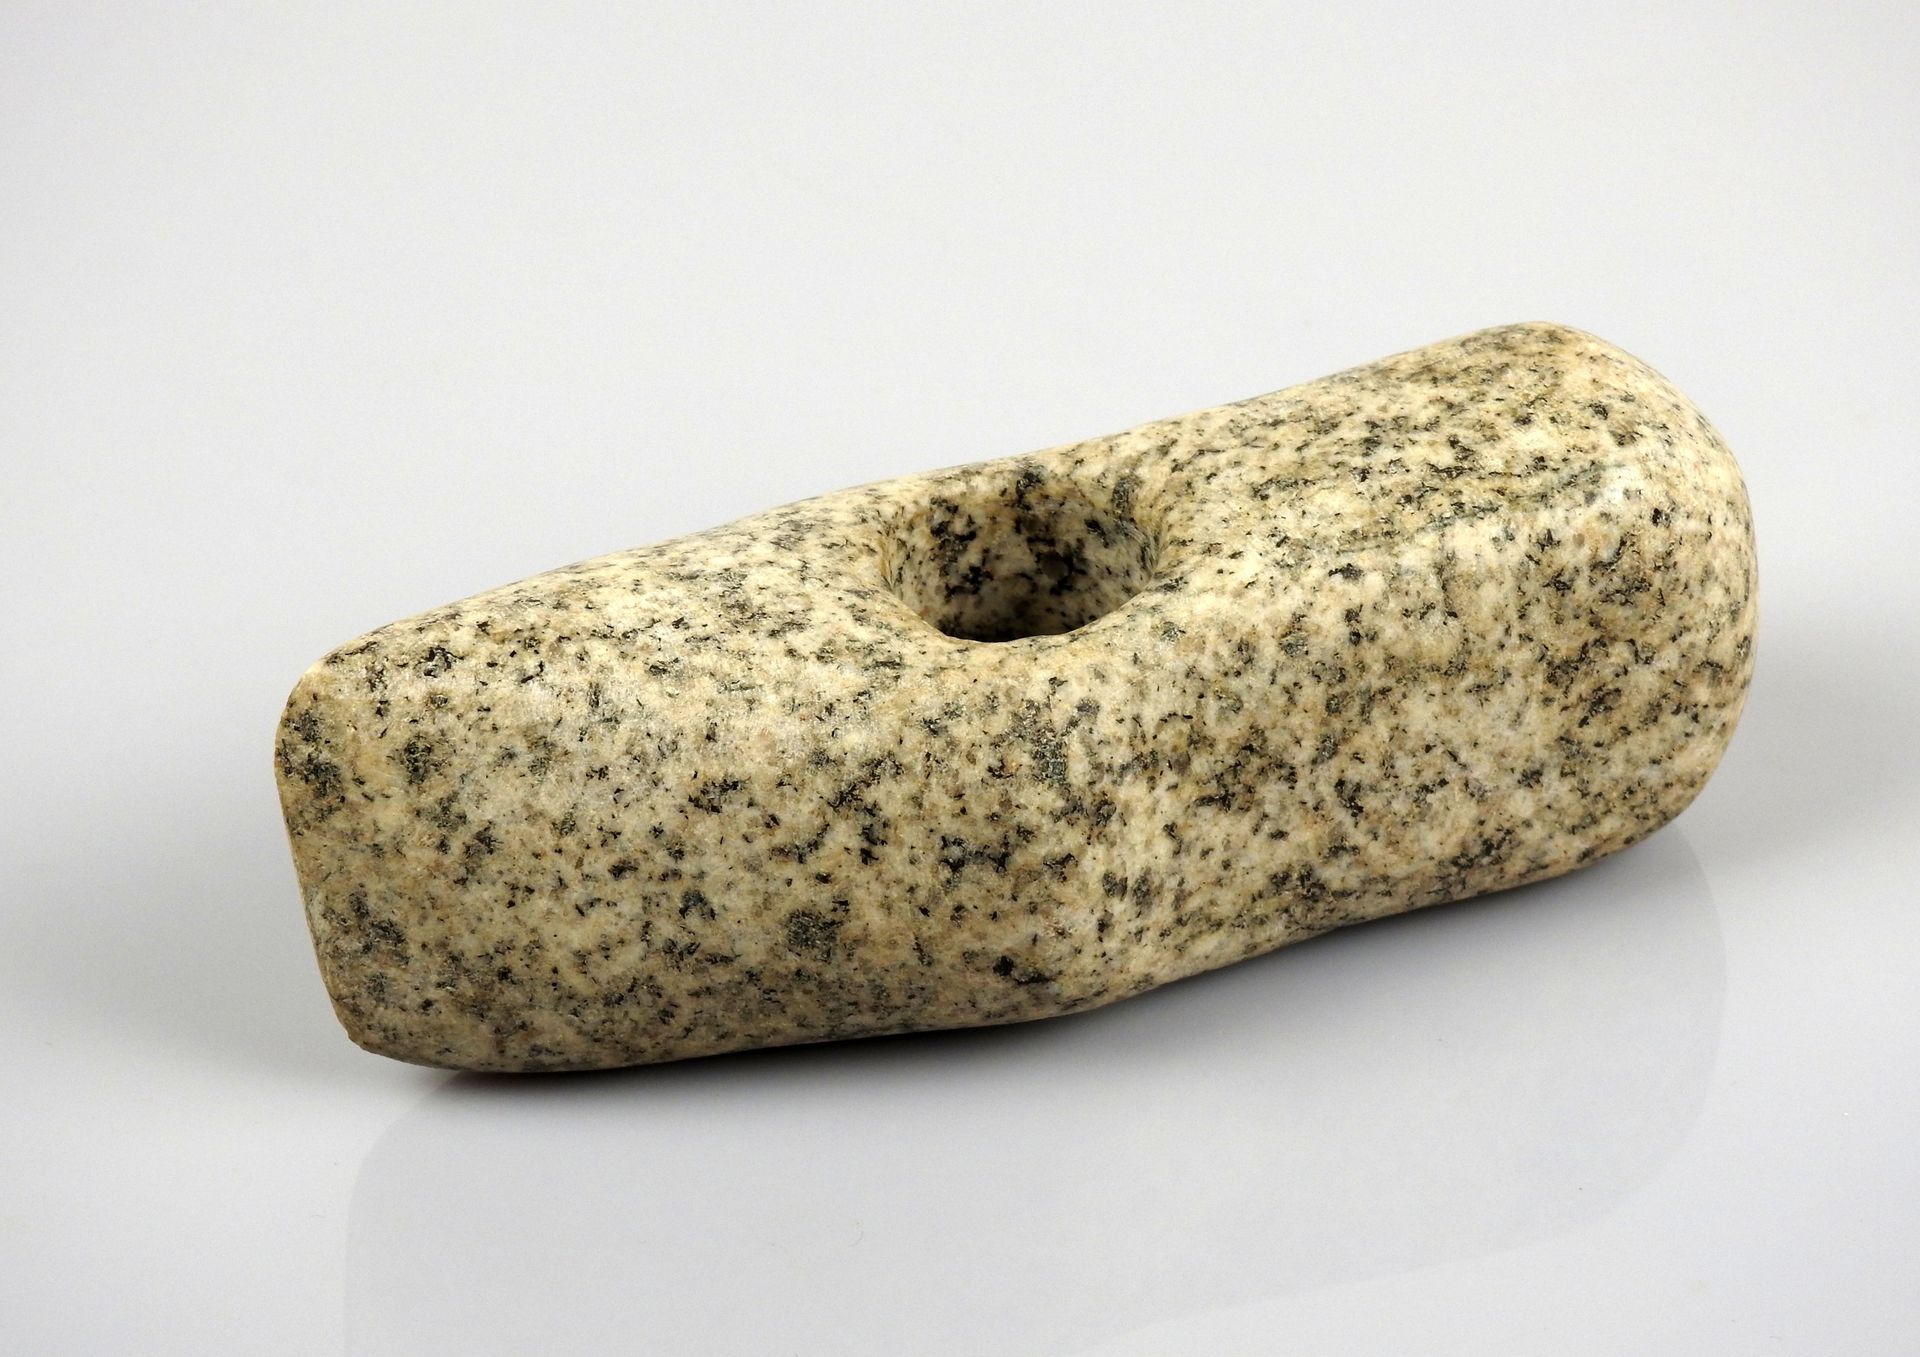 Null 极好的锤式斧头

斑纹花岗岩15厘米

法国史前史可能是布列塔尼